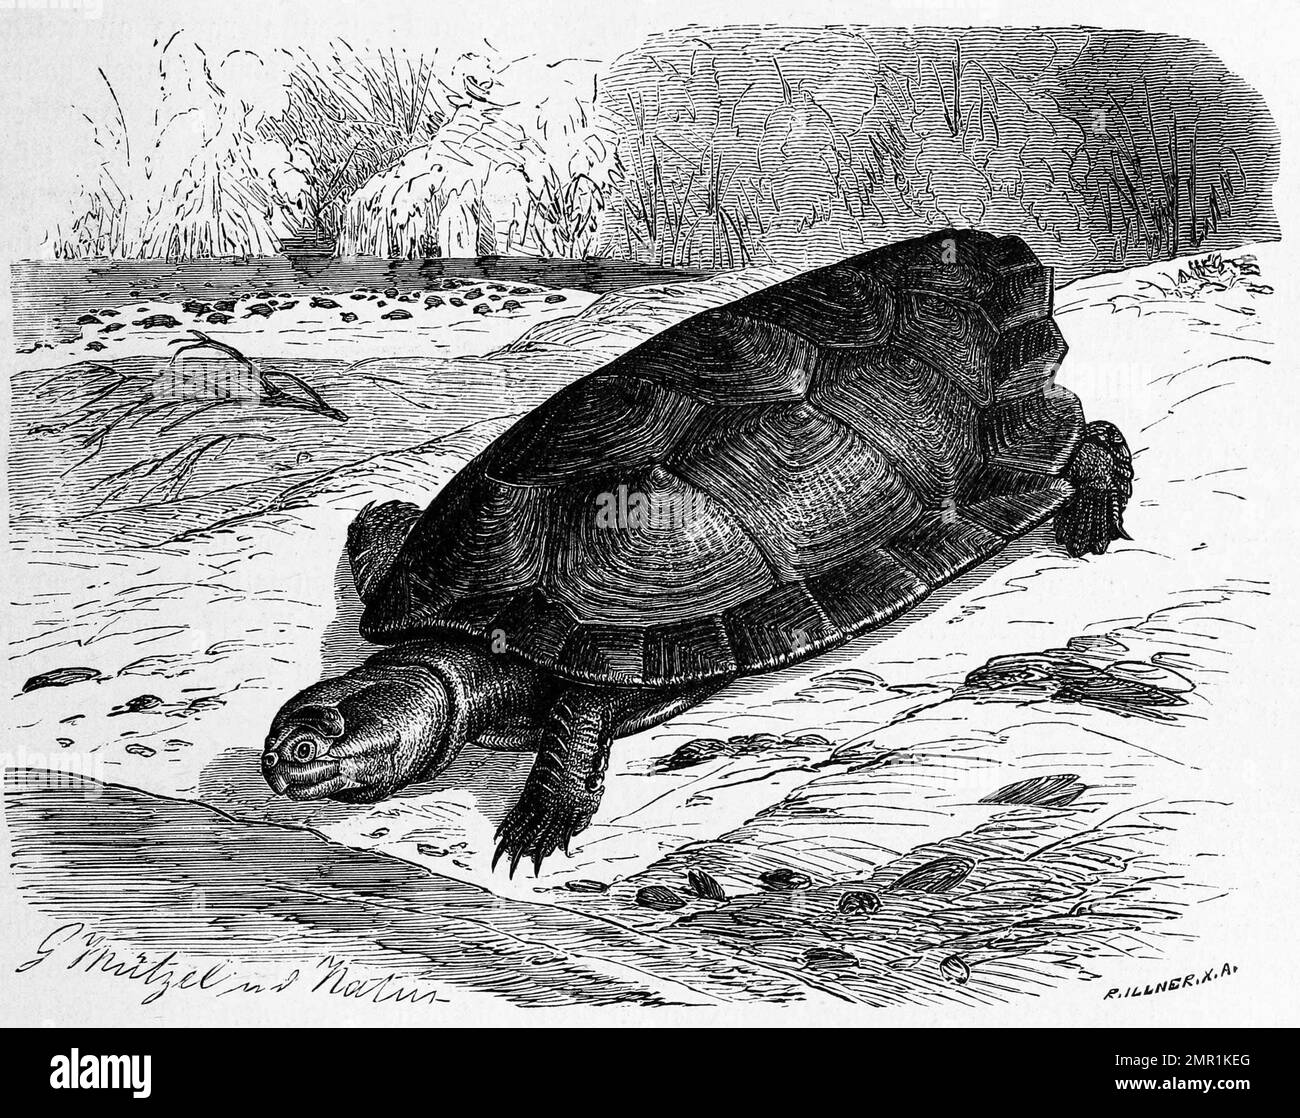 Reptilien, Arrauschildkröte, Podocnemis expansa, ist die größte, südamerikanische Süßwasserschildkröte, Historisch, digital restaurierte Reproduktion von einer Vorlage aus dem 19. Jahrhundert Stock Photo